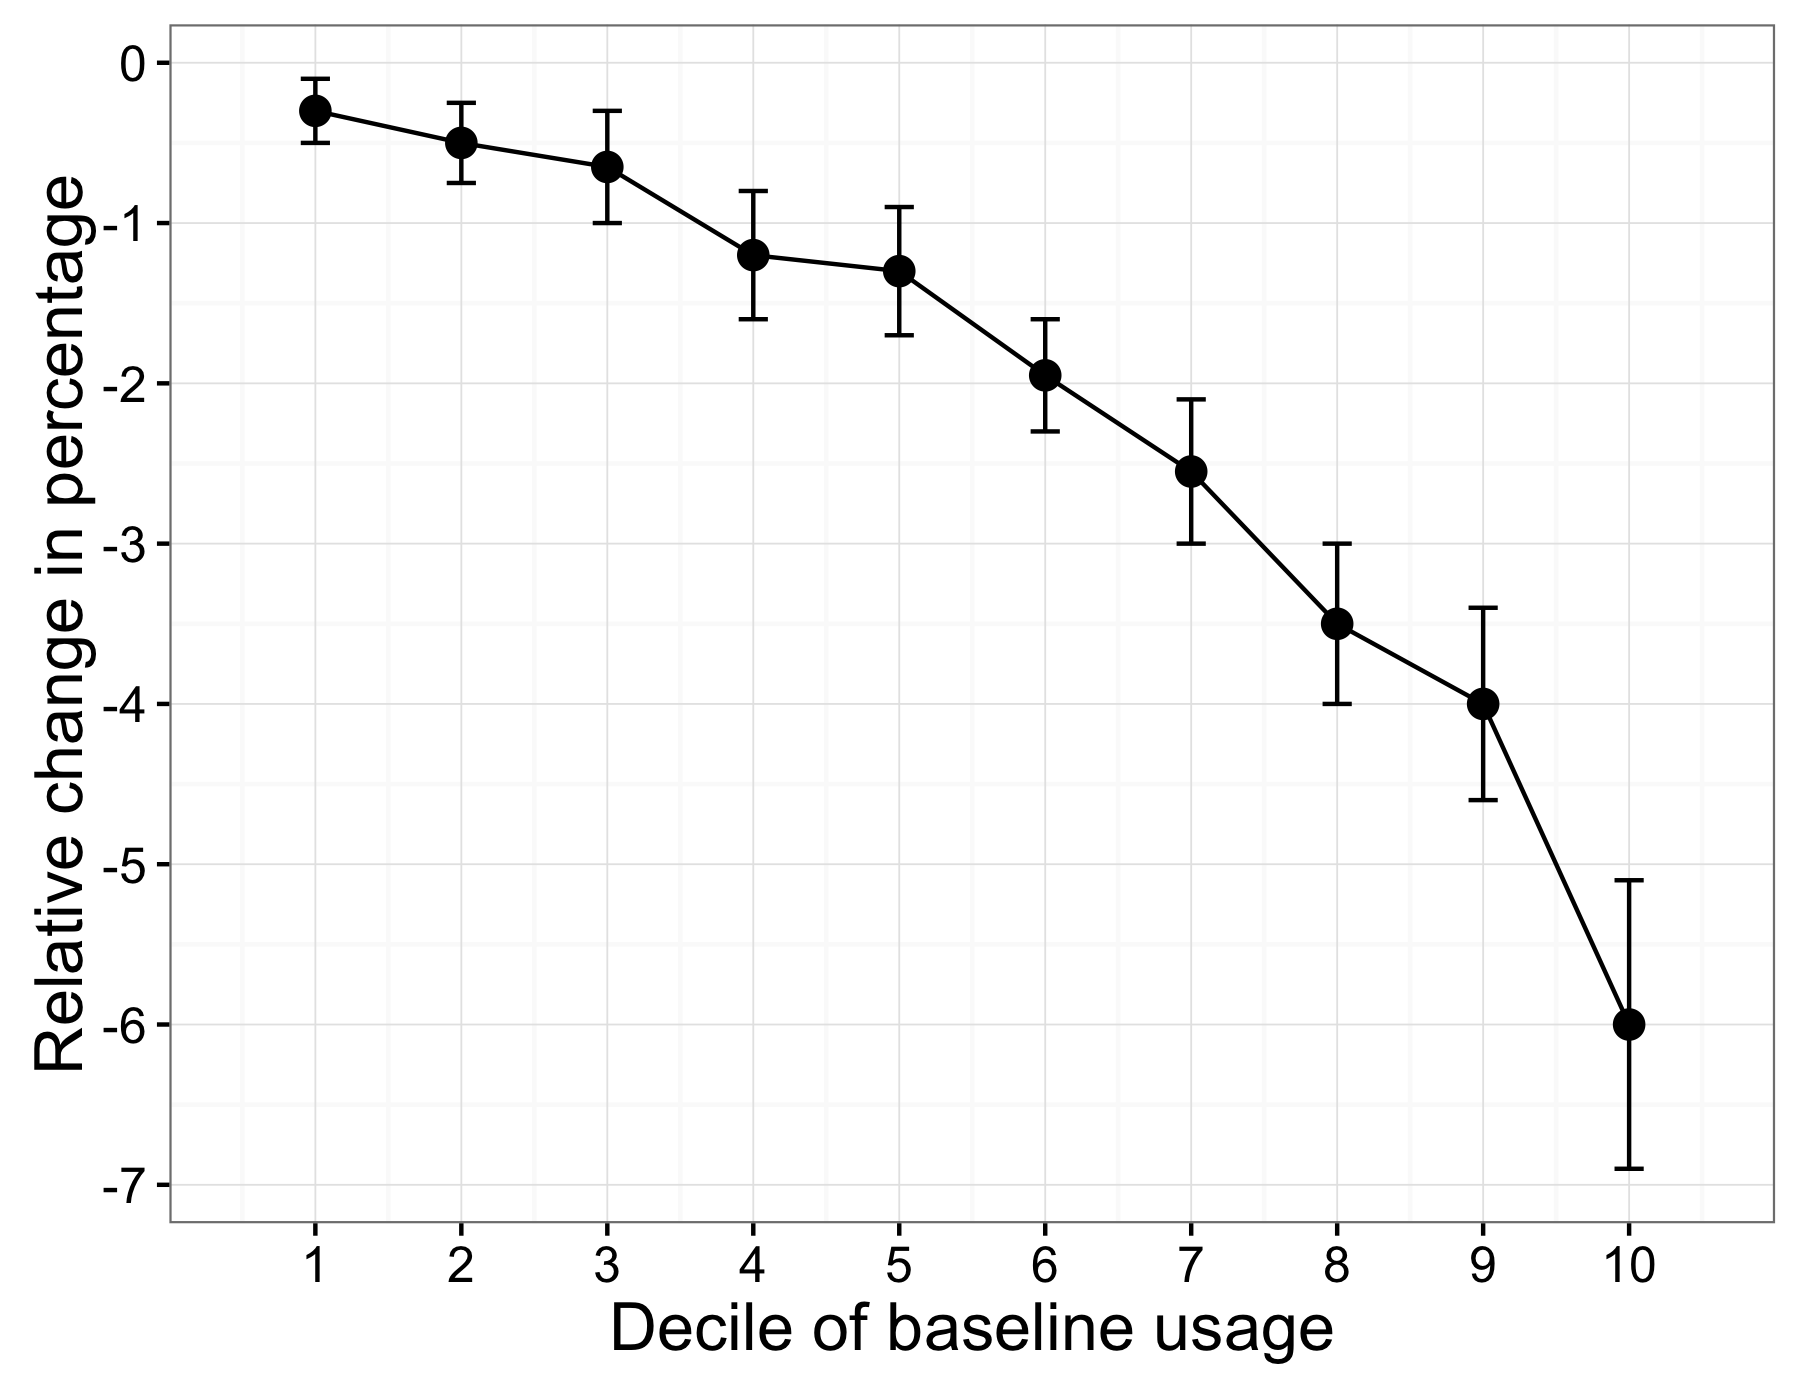 Figura 4.7: L'heterogeneïtat dels efectes del tractament en Allcott (2011). La disminució en el consum d'energia va ser diferent per a les persones de diferents decils d'ús de la línia de base.